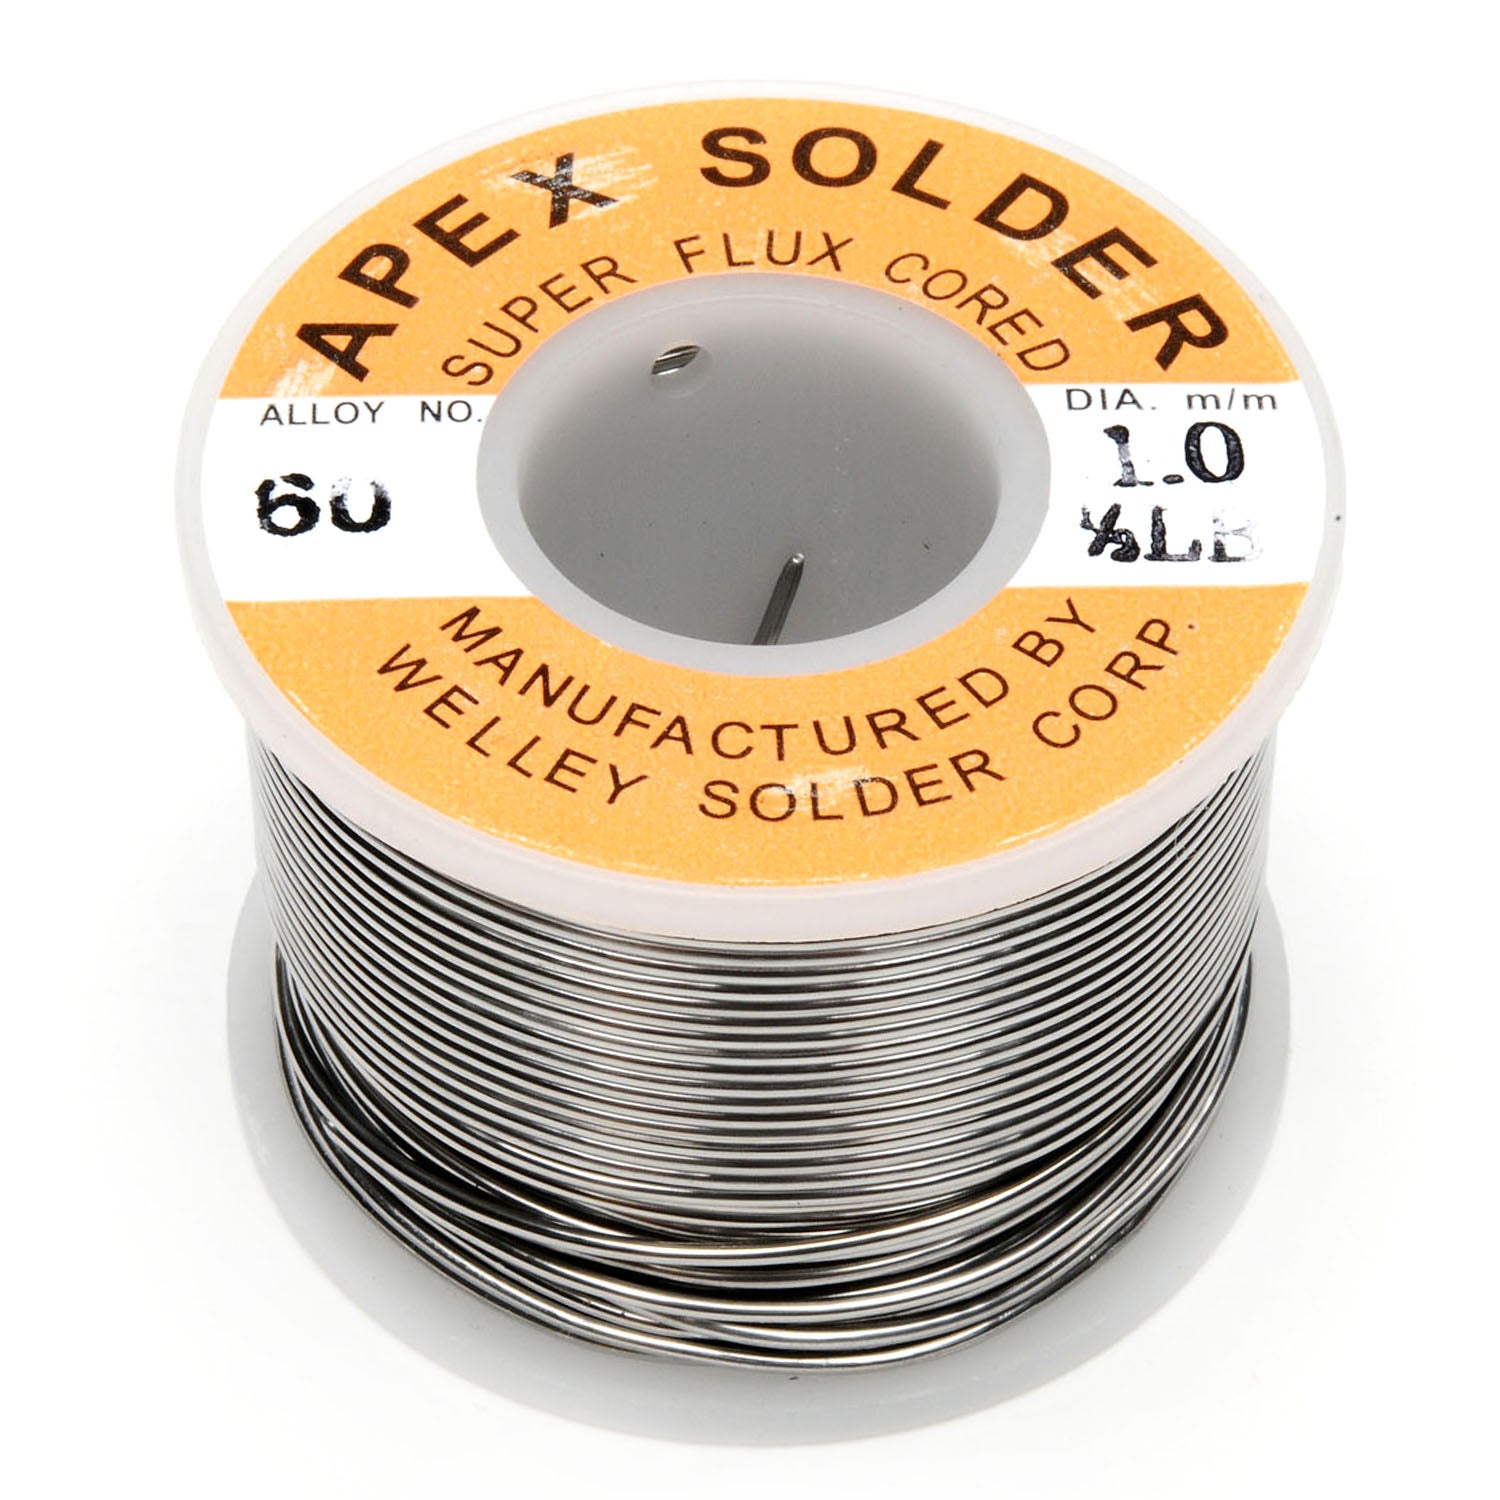 125-641005A 1.0m 0.5lb 60/40 APEX Solder wire